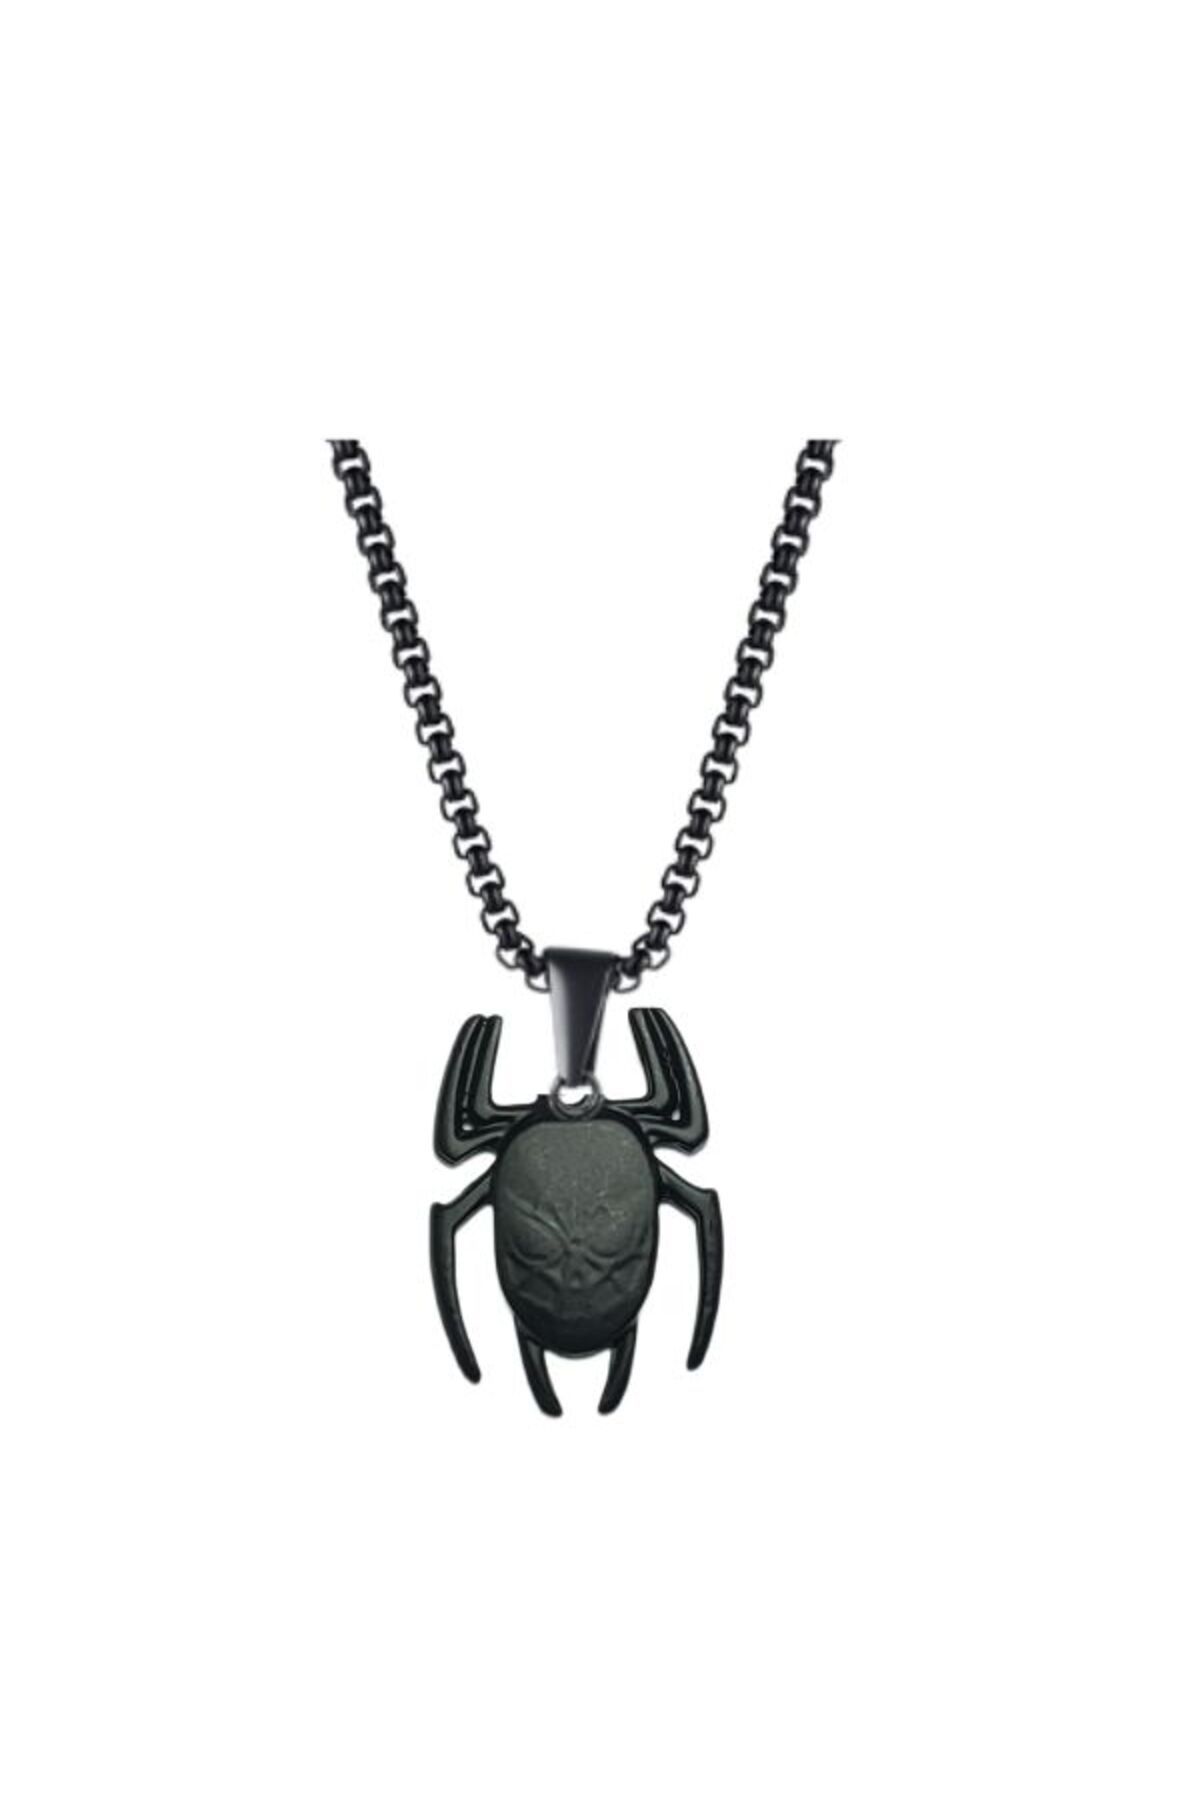 Black Point Örümcek Adam Spiderman -Kabartmalı Örümcek Figür 3 boyutlu çelik kolye hediye